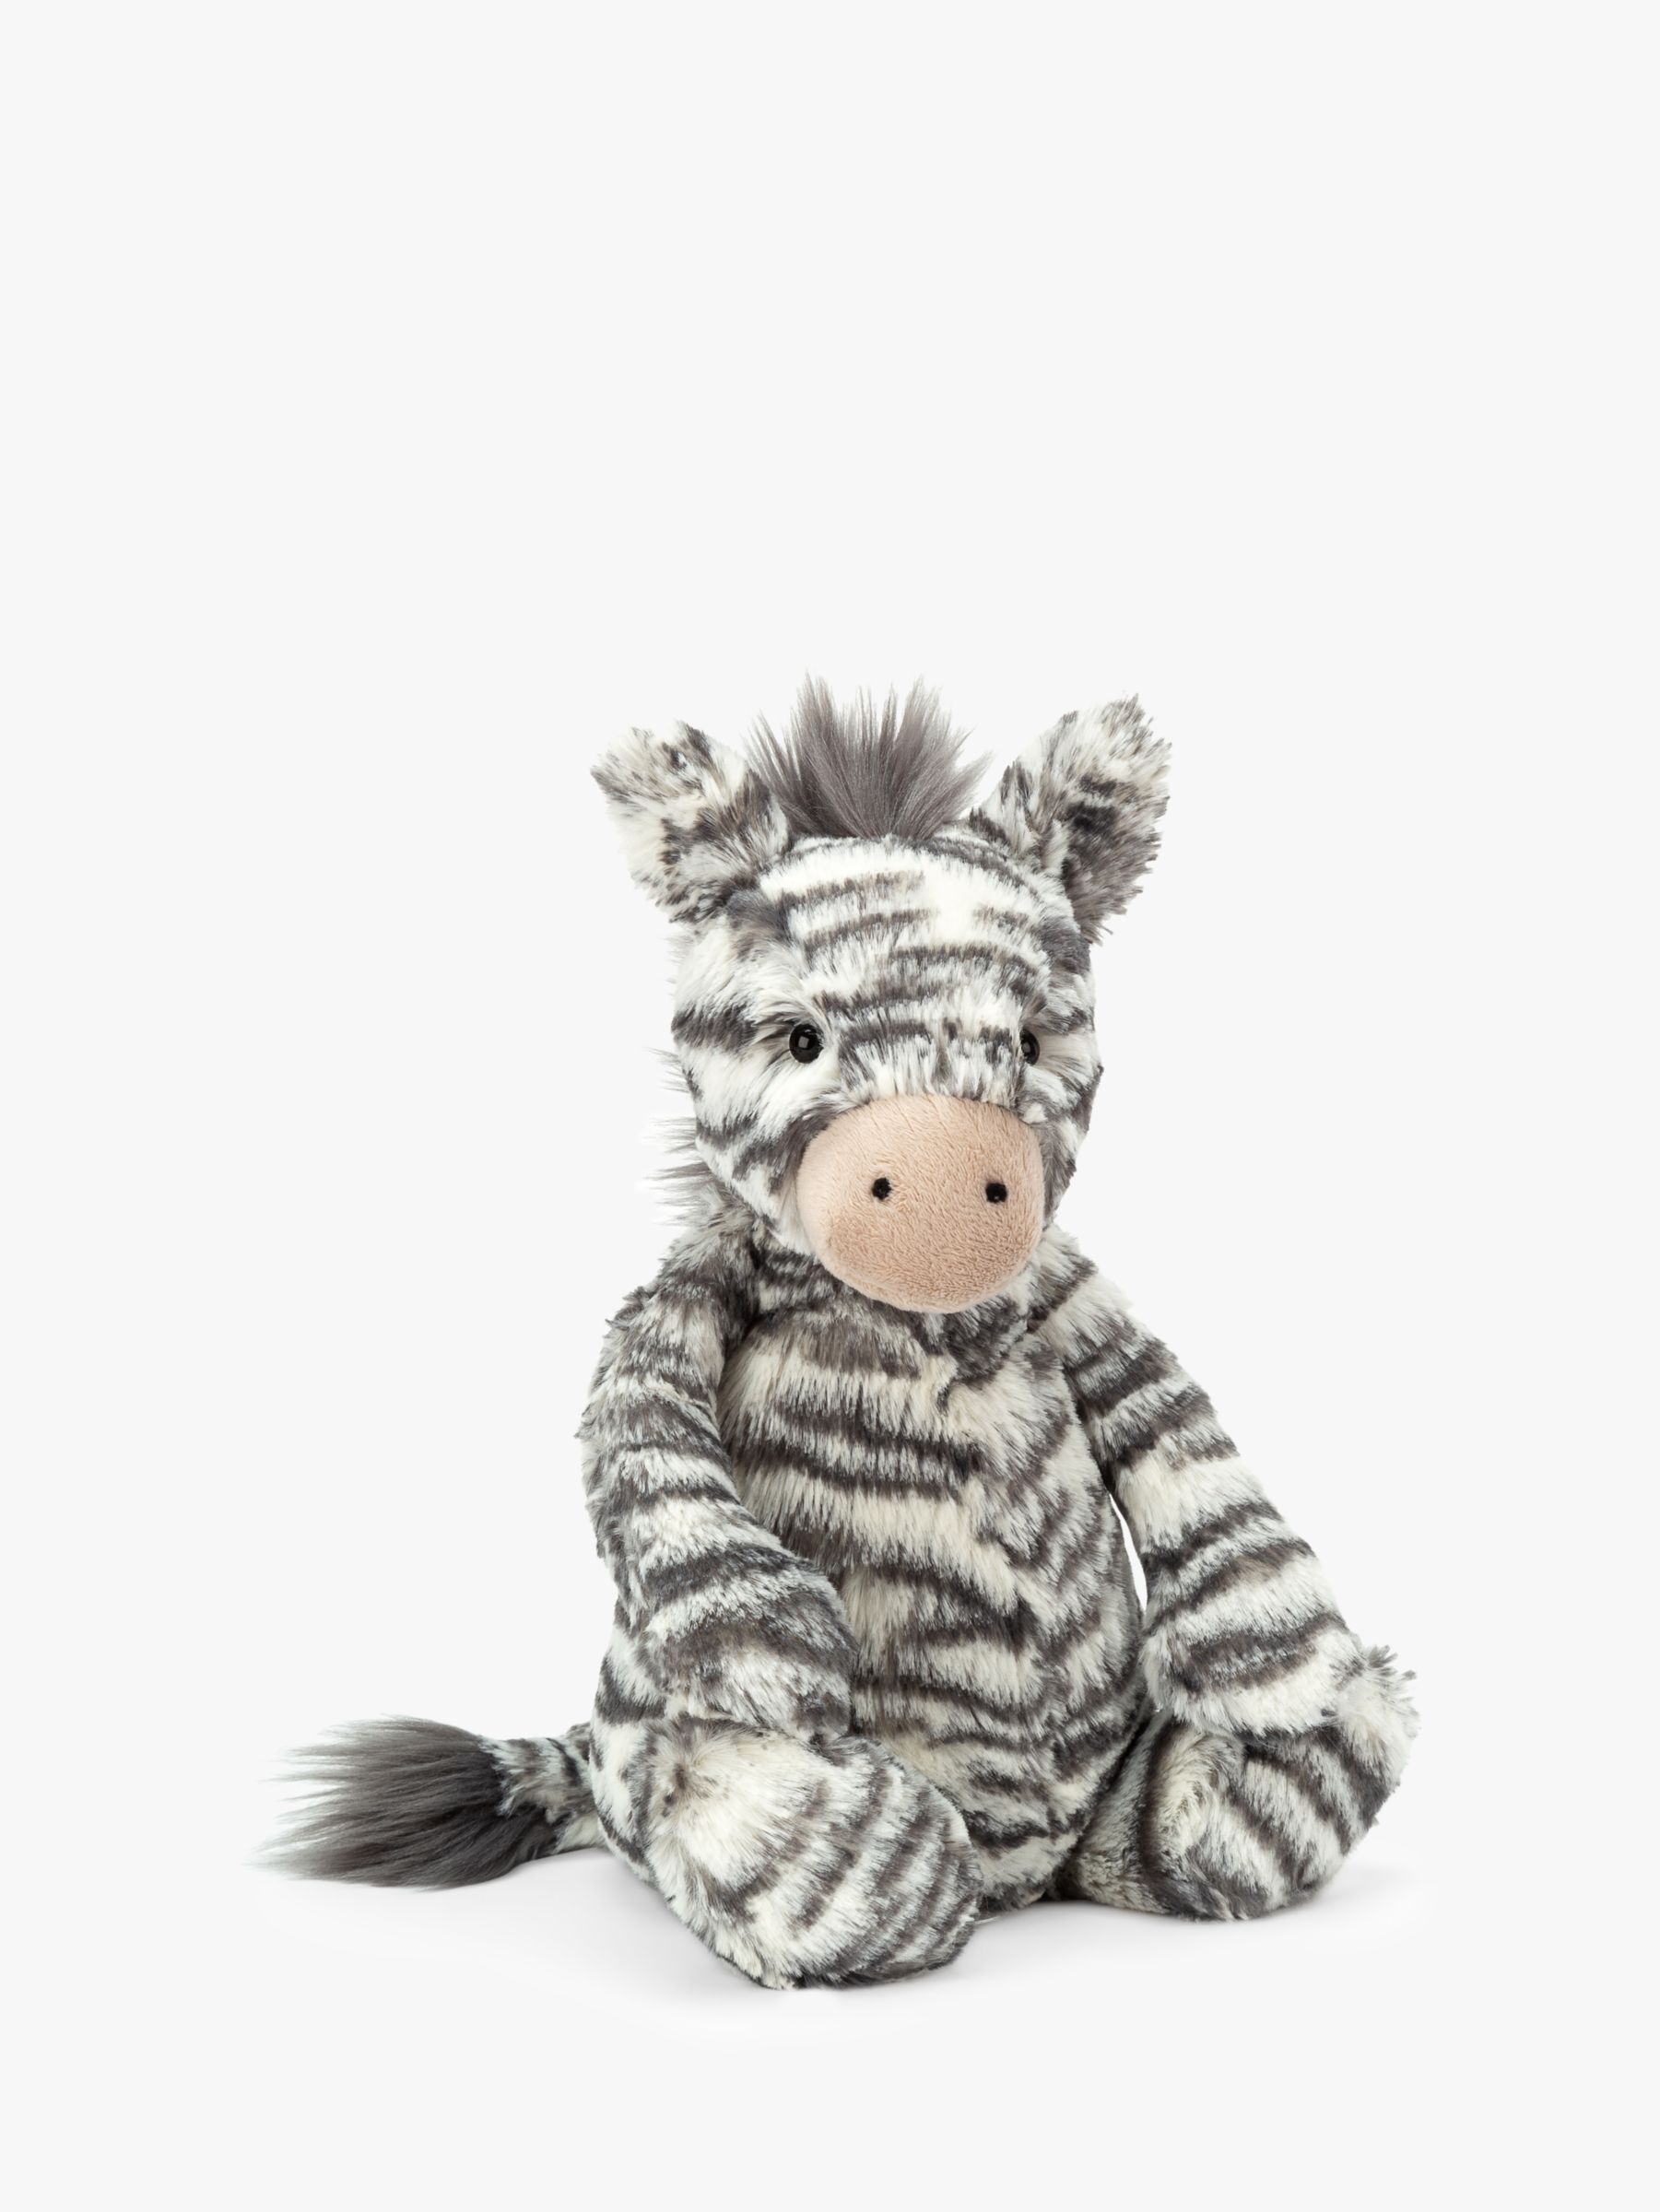 zebra cuddly toy